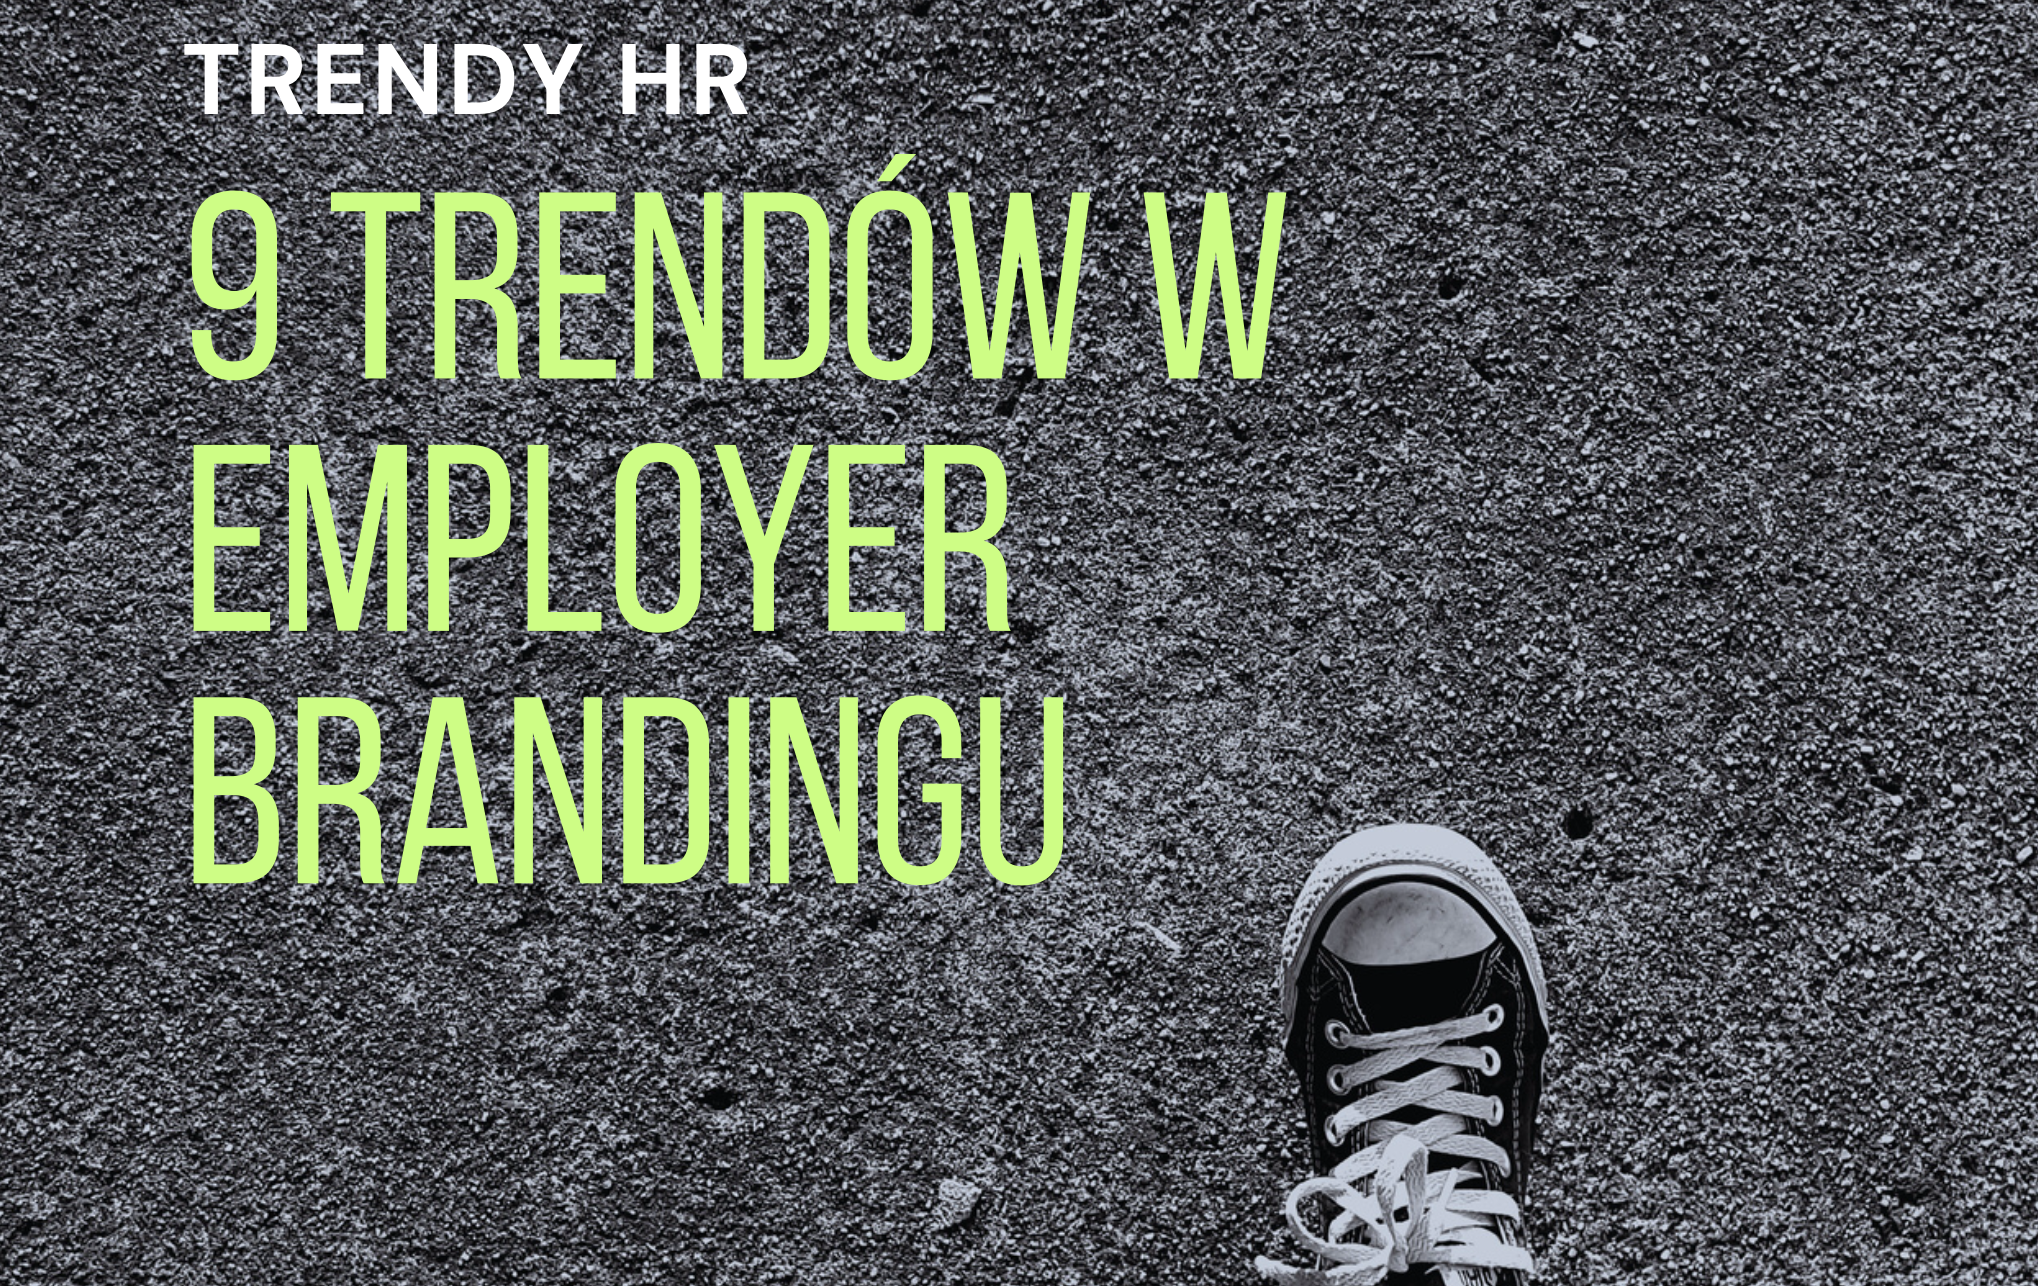 Report: 9 employer branding trends